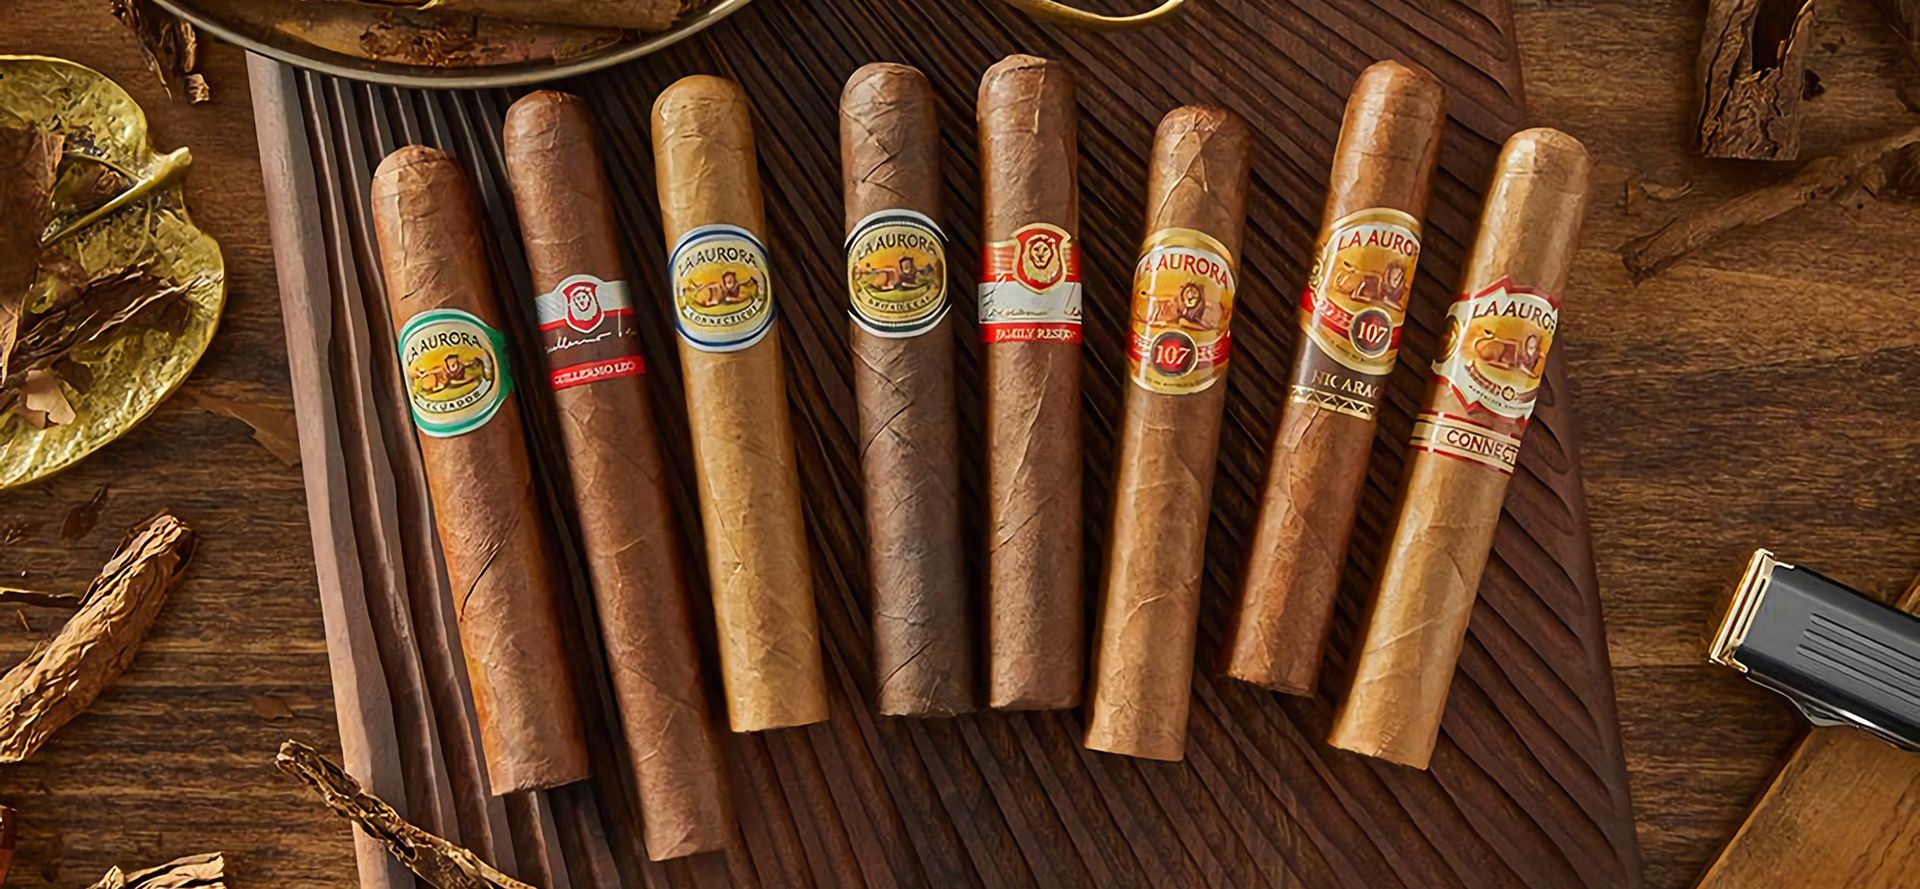 La Aurora Cheap Cigars.